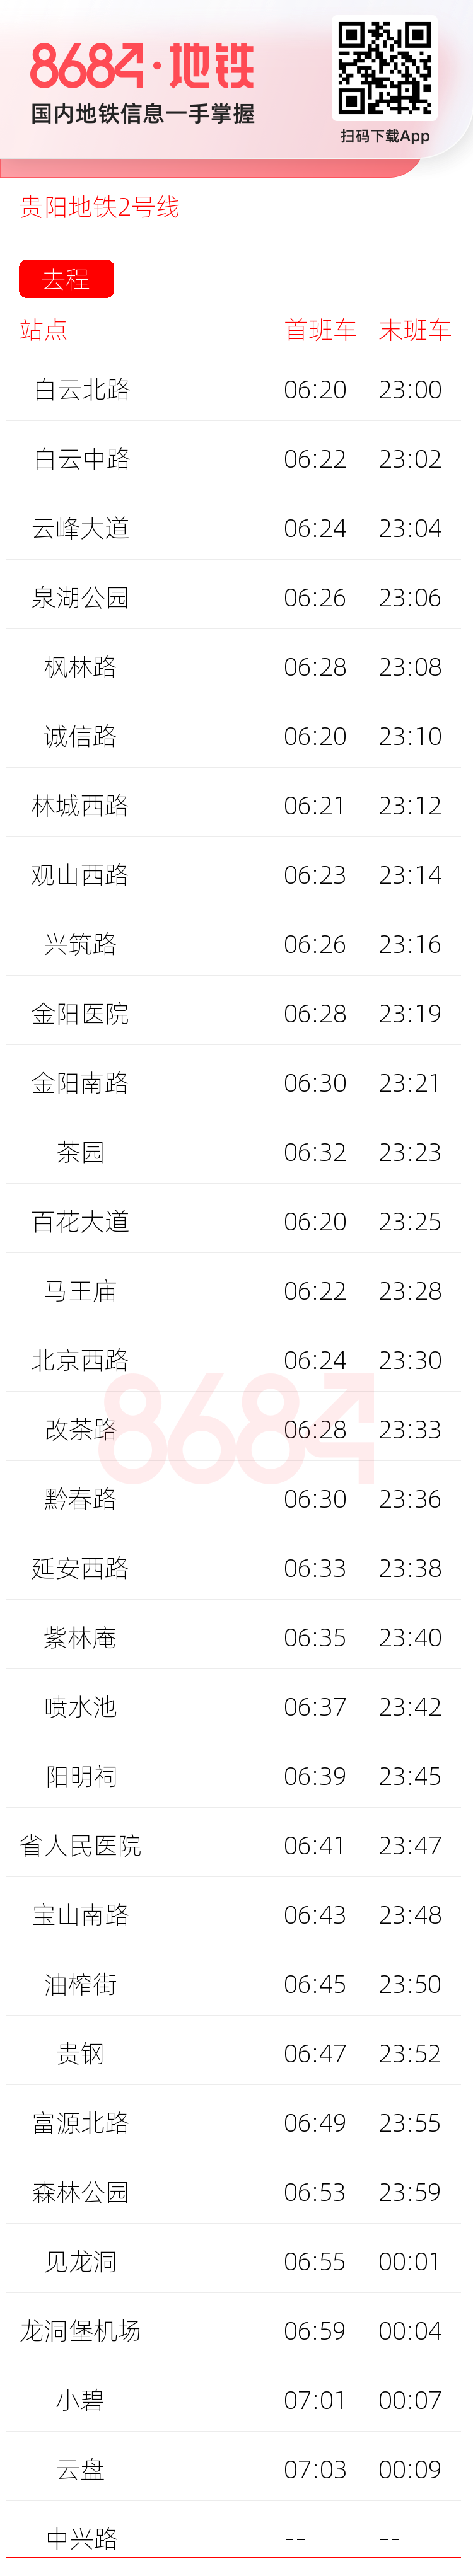 贵阳地铁2号线运营时间表